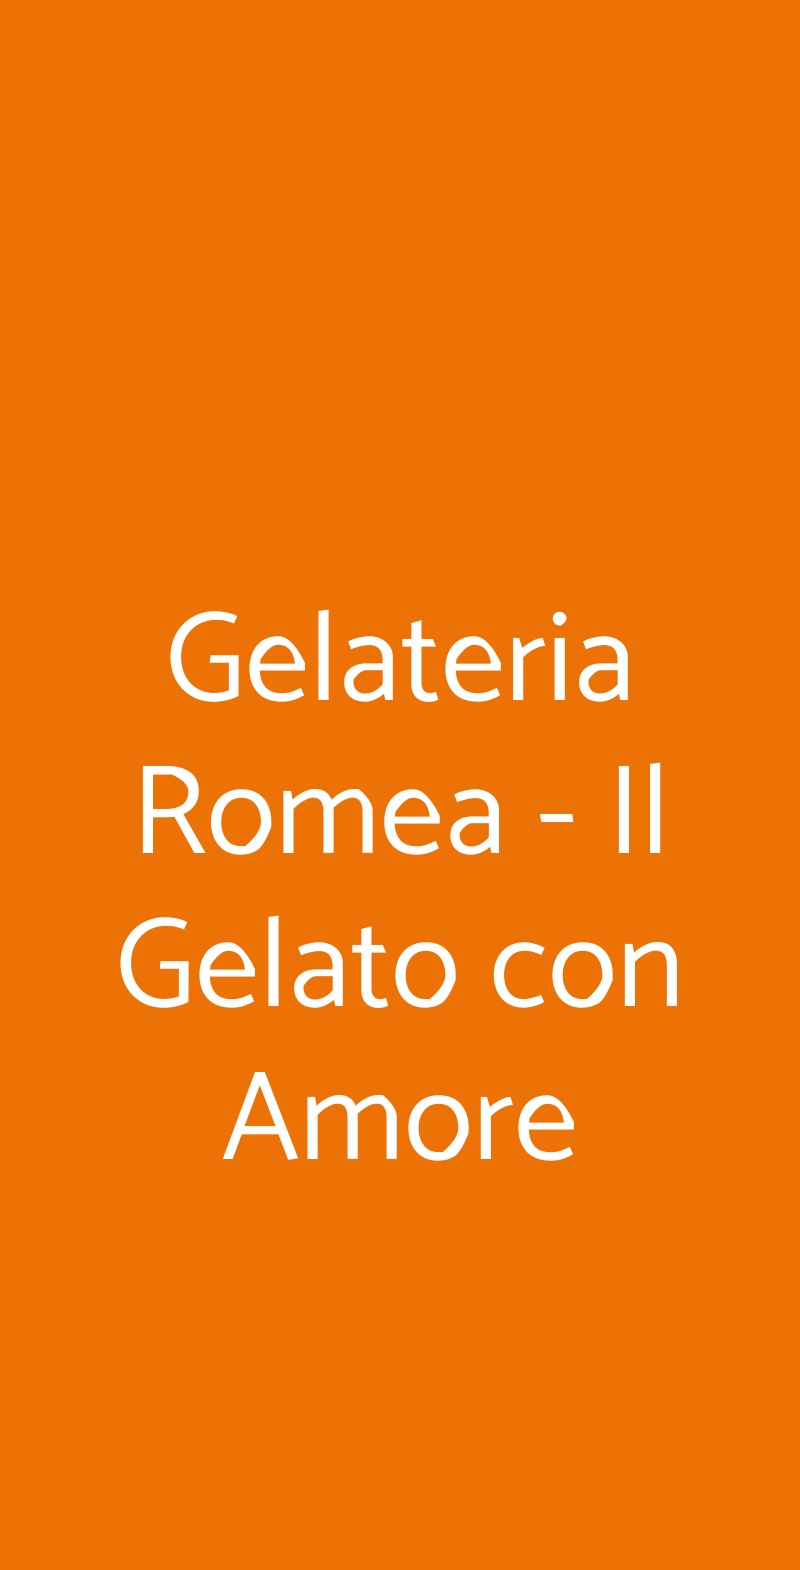 Gelateria Romea - Il Gelato con Amore Pavia menù 1 pagina